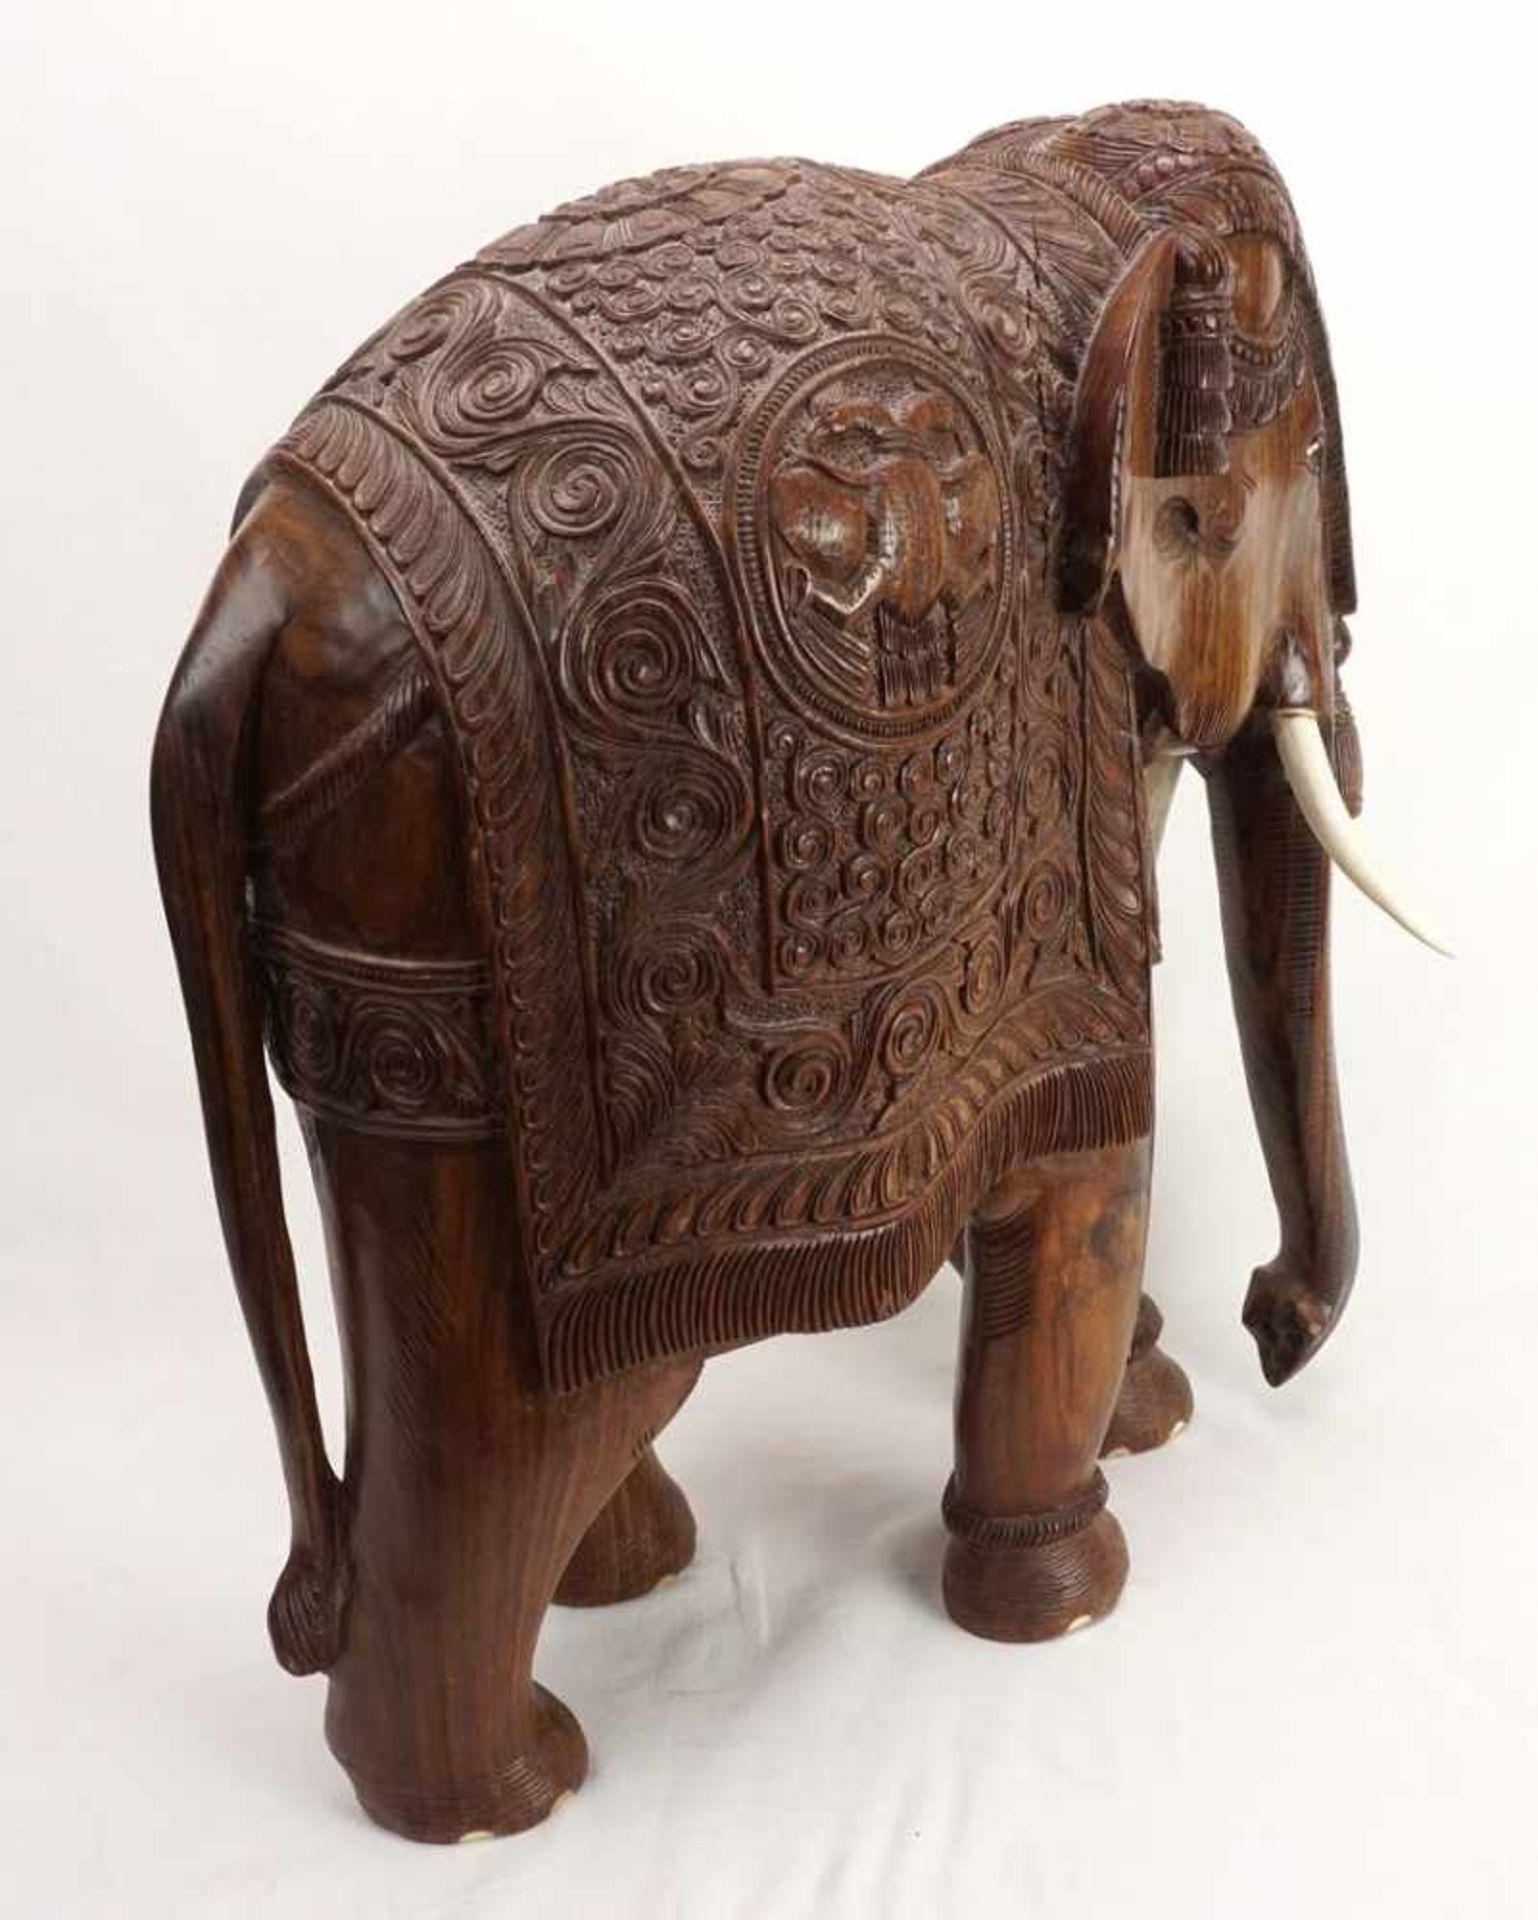 Großer Elefant, Indien, 20. Jh.Palisander, prächtig ausgeschmückter Elefant mit Stoßzähnen aus Bein, - Bild 5 aus 6